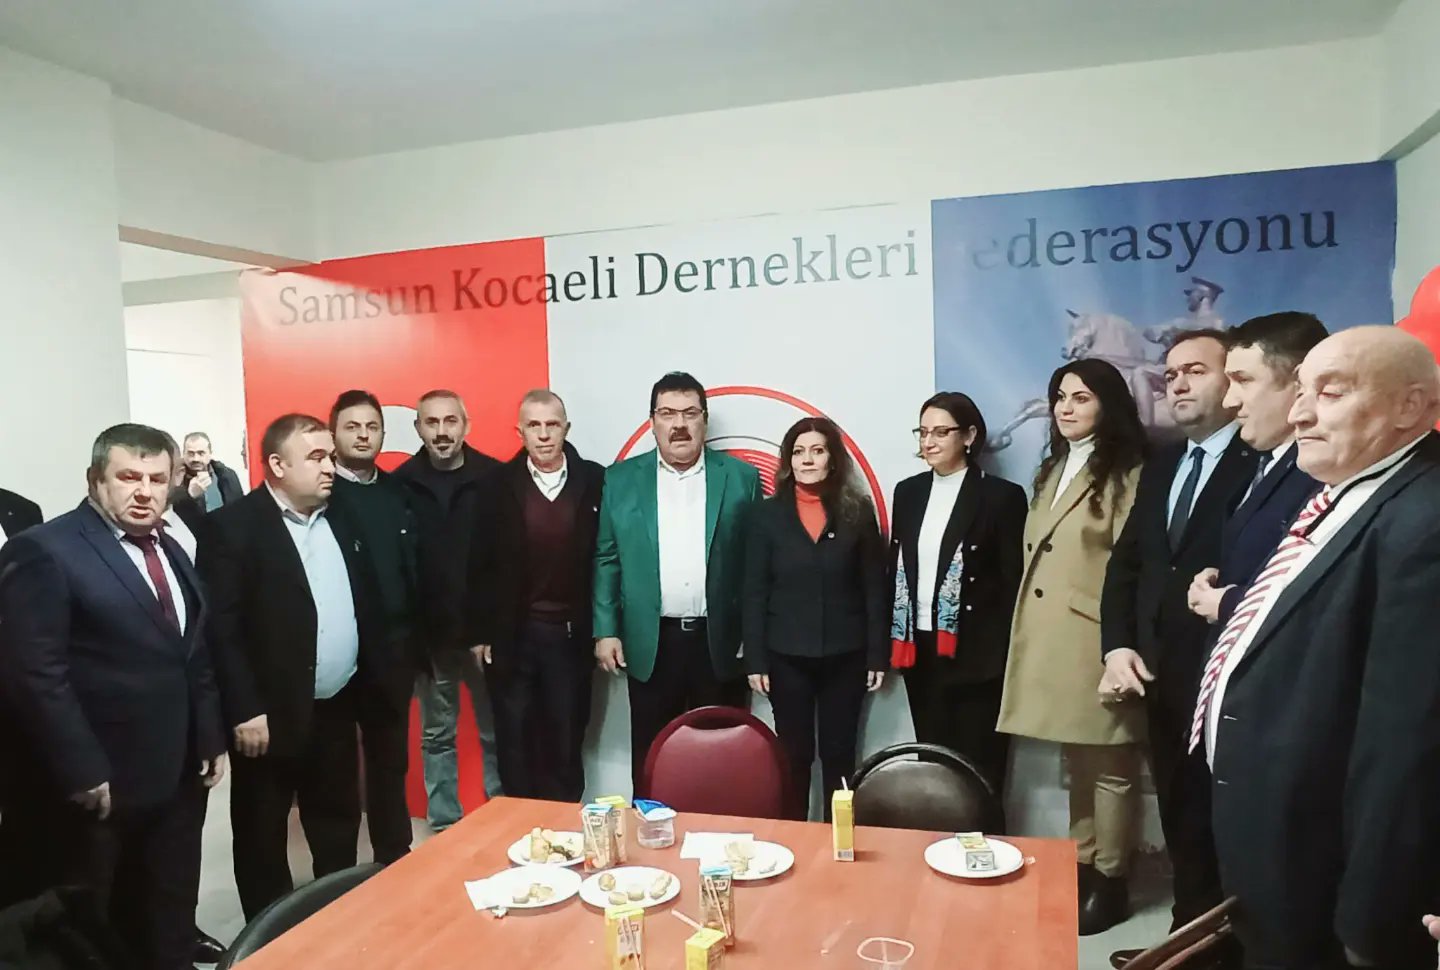 İl Başkanımız Serap Çakır ile Samsun Kocaeli Dernekleri Federasyonu'nun genel merkez açılışına katılım sağladık